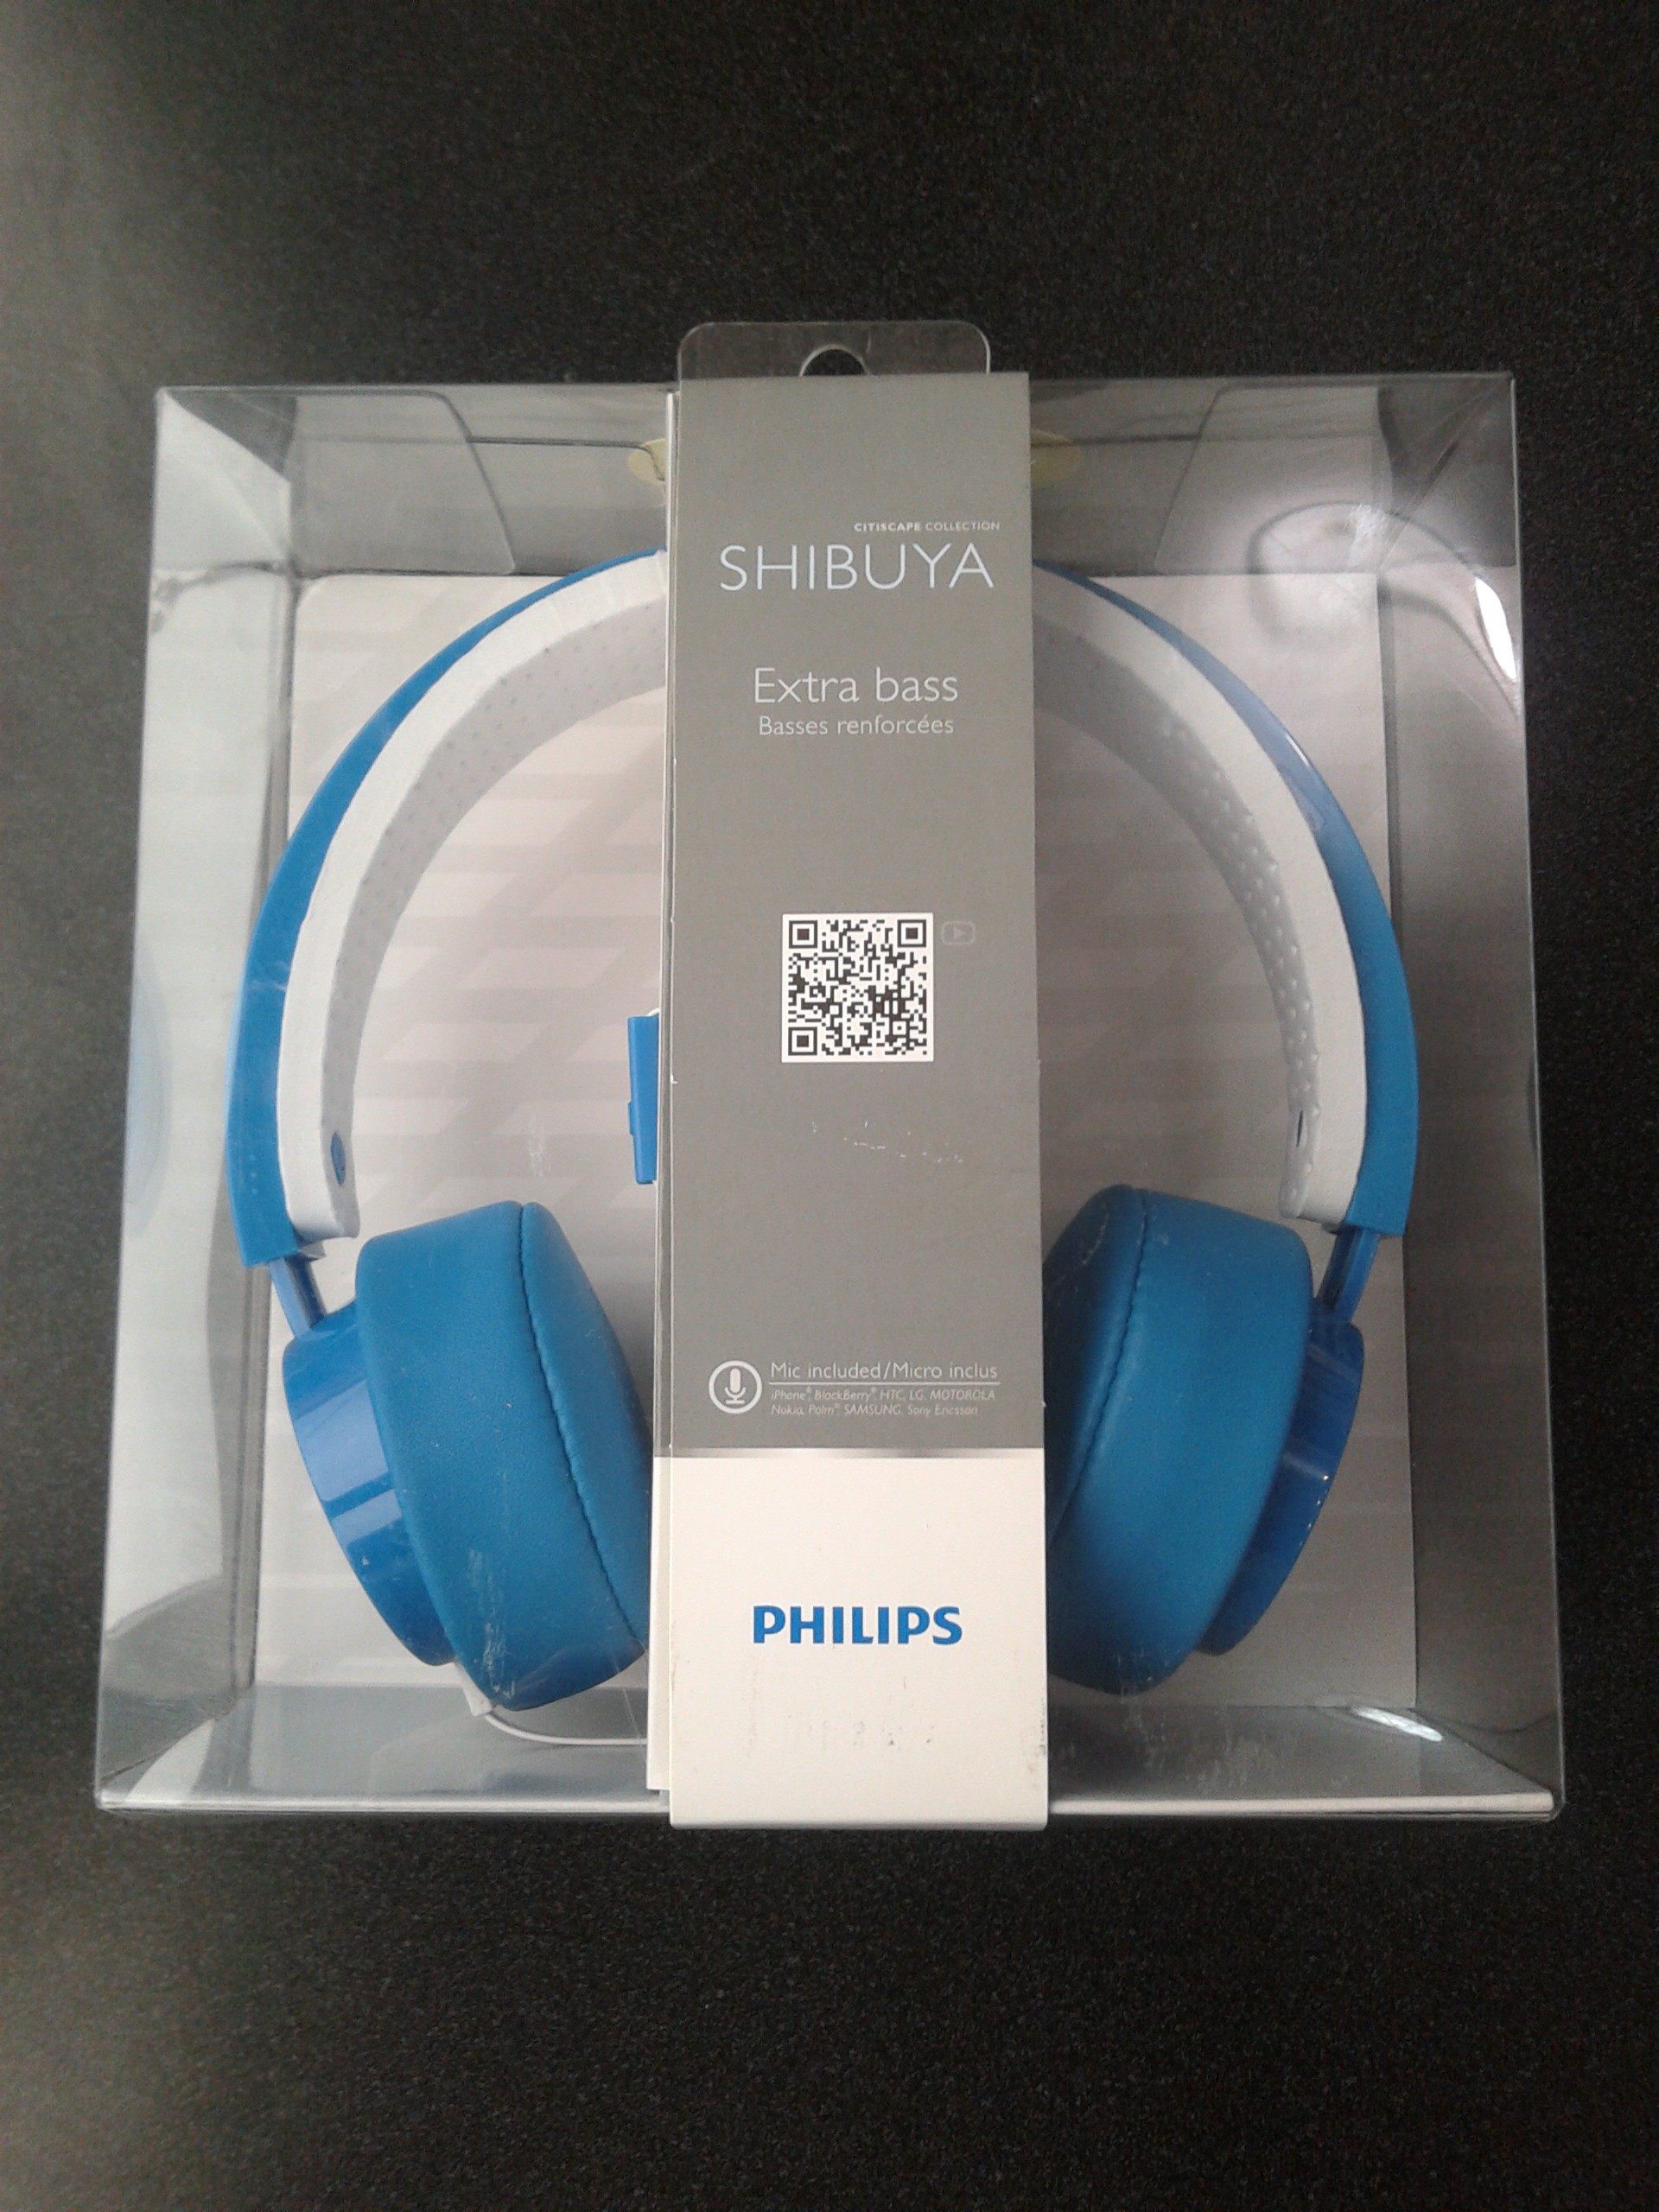  Philips SHIBUYA Kulaklık İncelemem